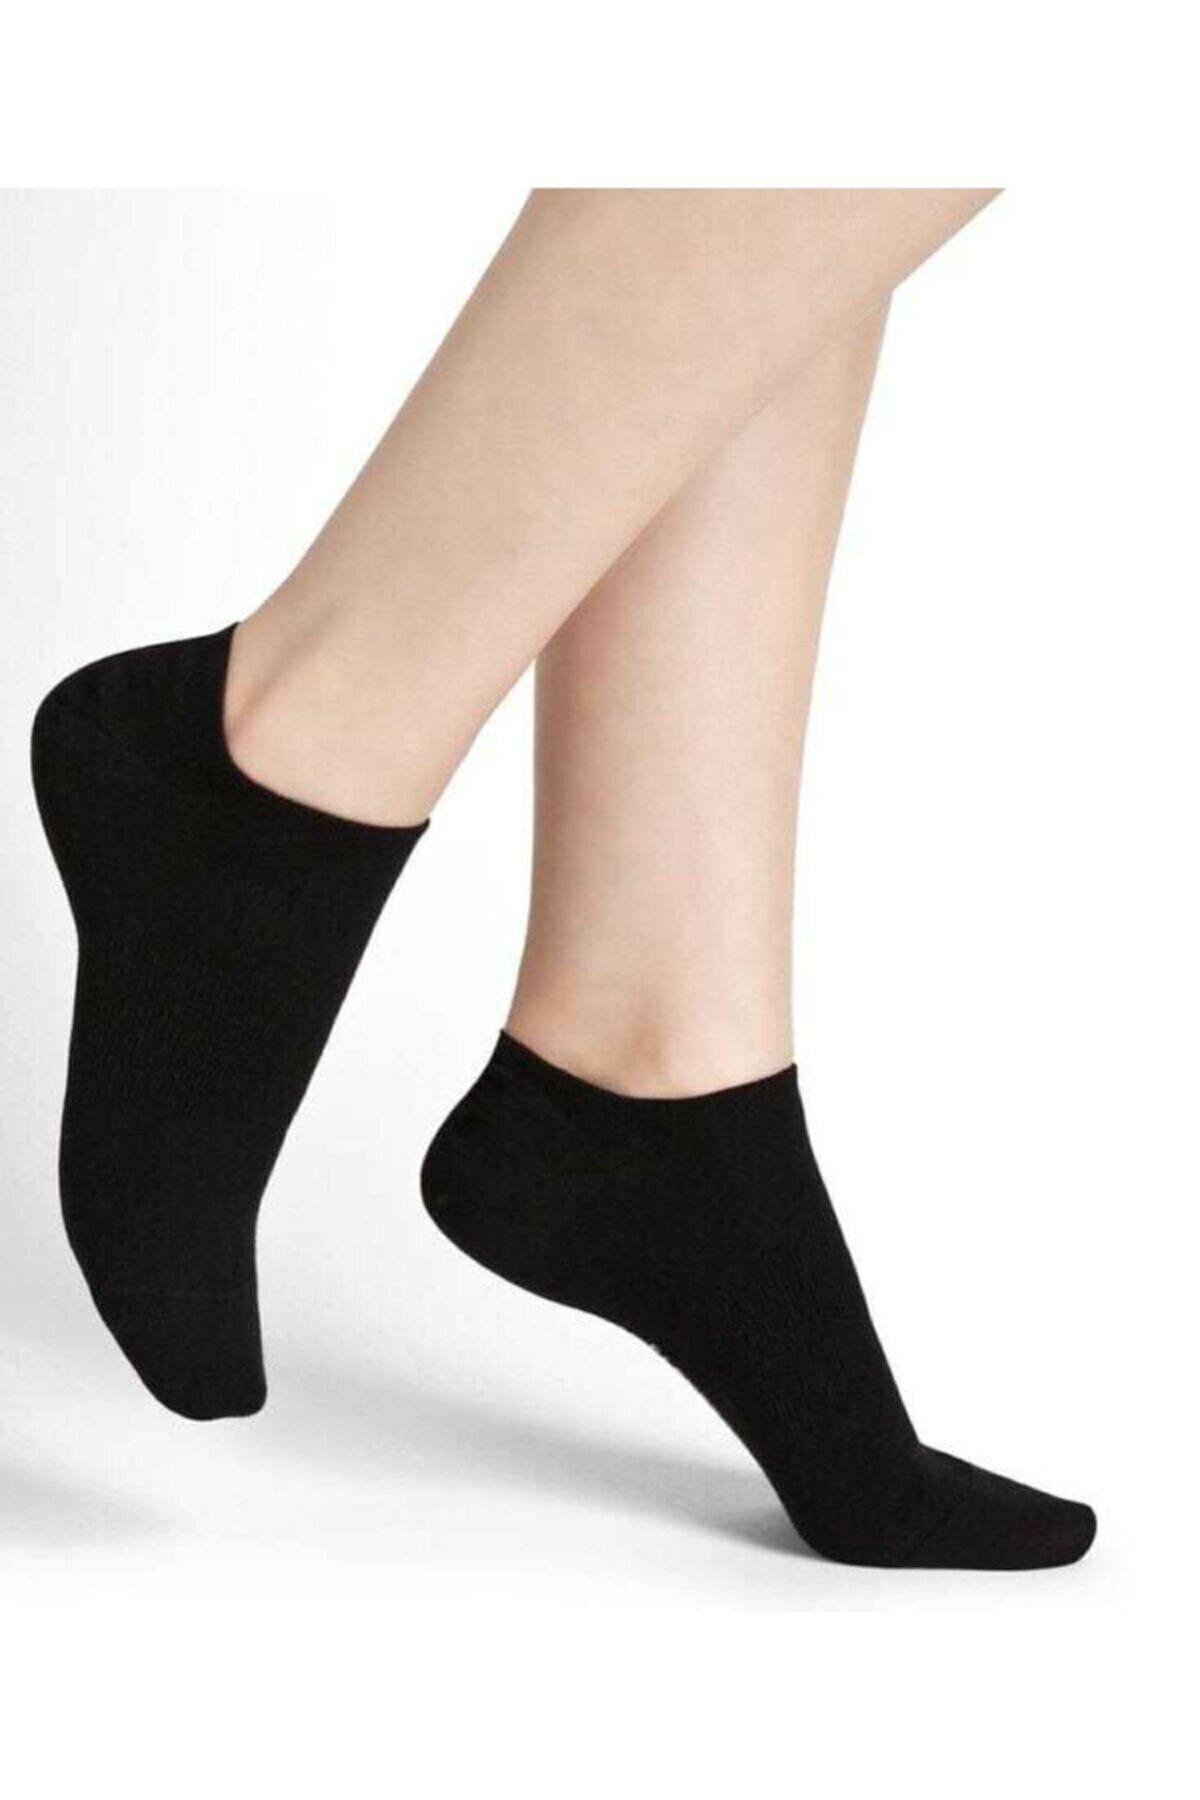 Короткие черные носки. Носки черные женские. Носки укороченные. Носки укороченные женские. Носки женские короткие черные.